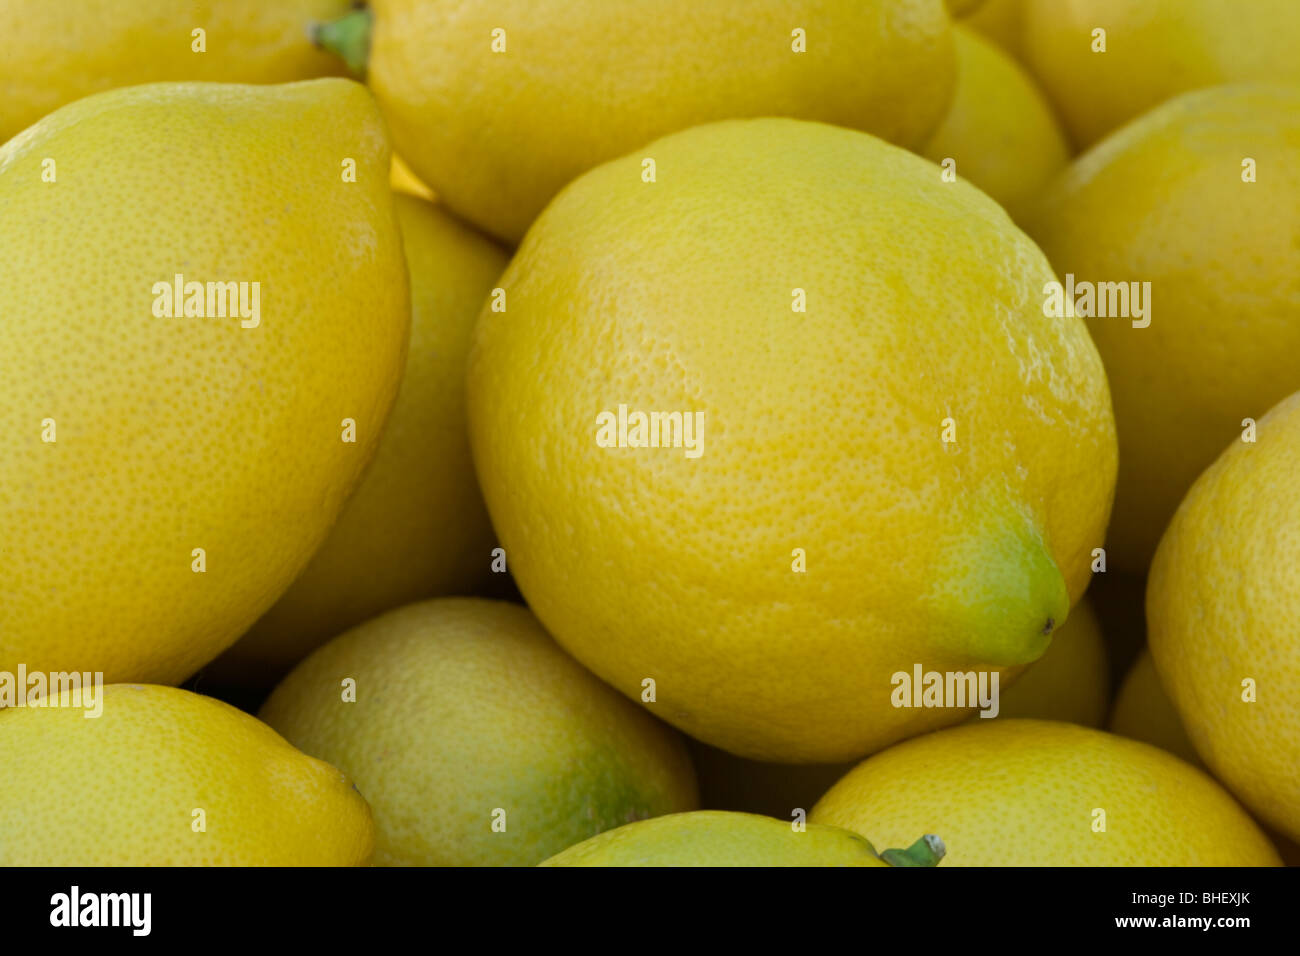 Lemons, harvested 'Citrus limon'. Stock Photo